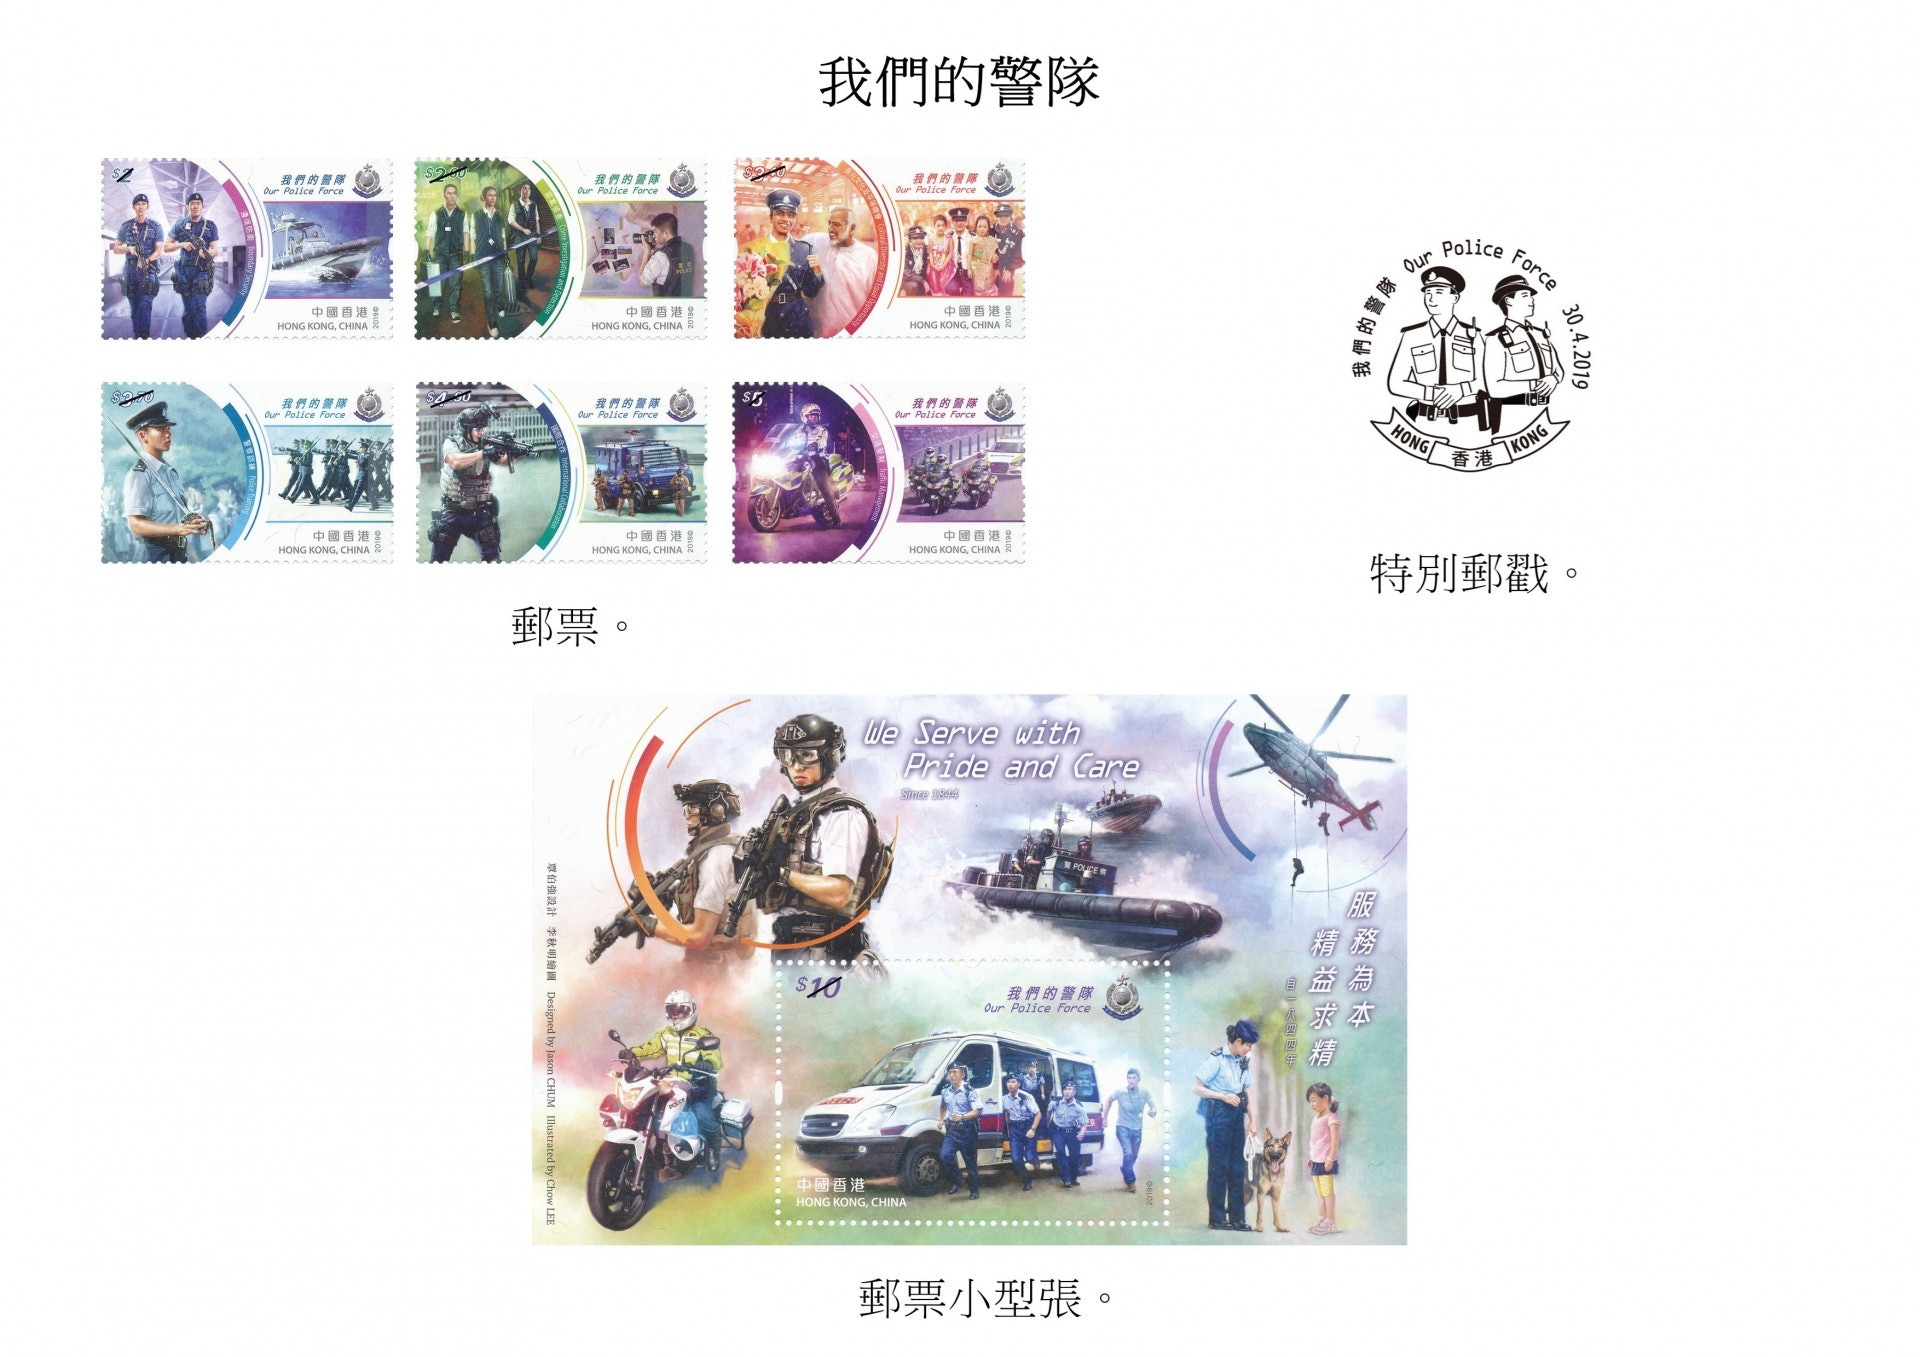 香港警隊主題郵票將於月底推出發售]香港政府新聞處^